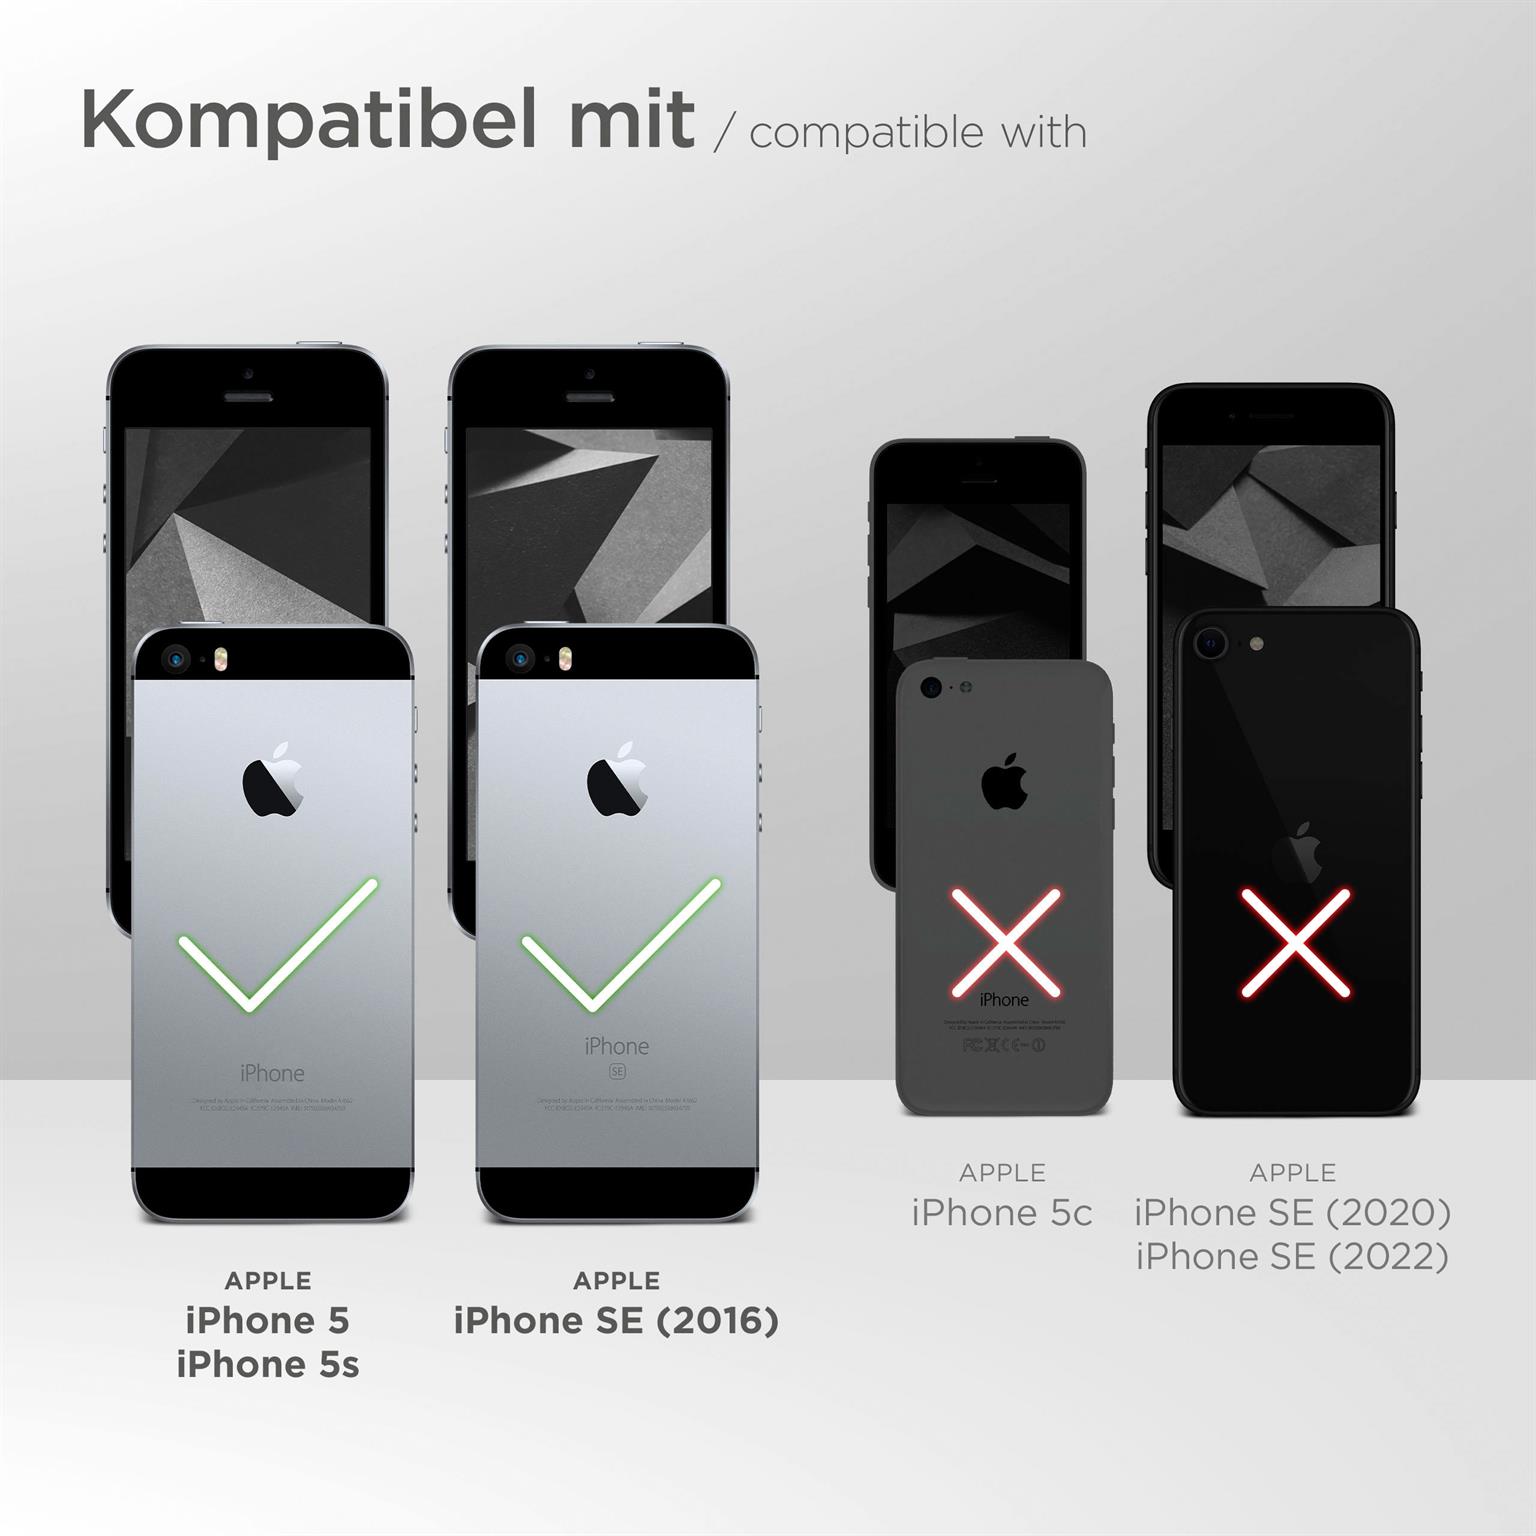 moex Purse Case für Apple iPhone 5 – Handytasche mit Geldbörses aus PU Leder, Geld- & Handyfach